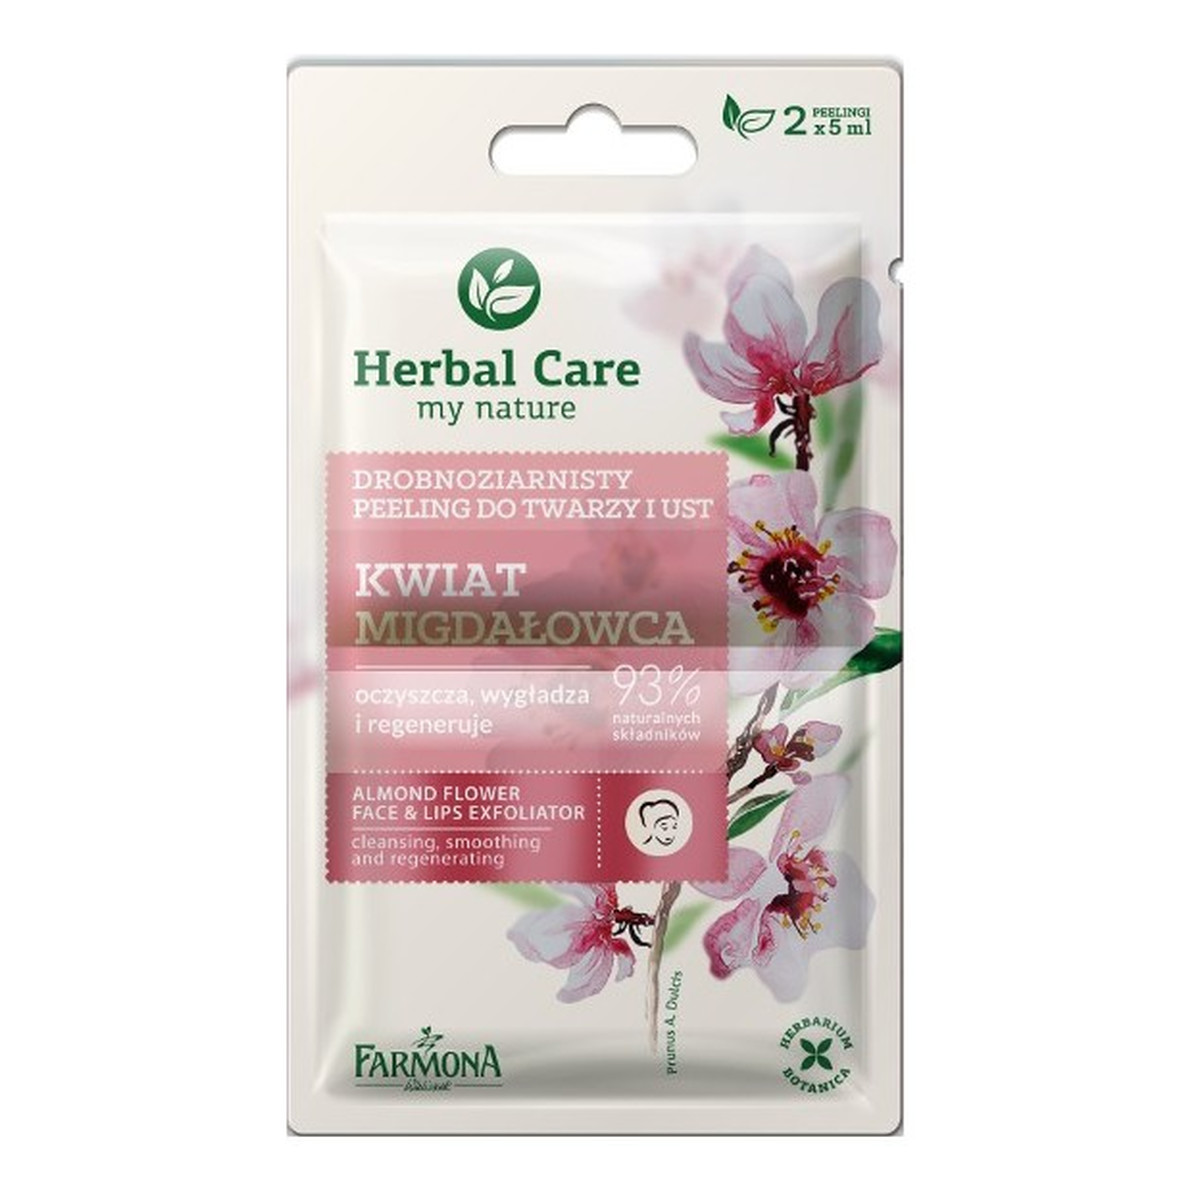 Farmona Herbal Care Peeling drobnoziarnisty Kwiat Migdałowca saszetka